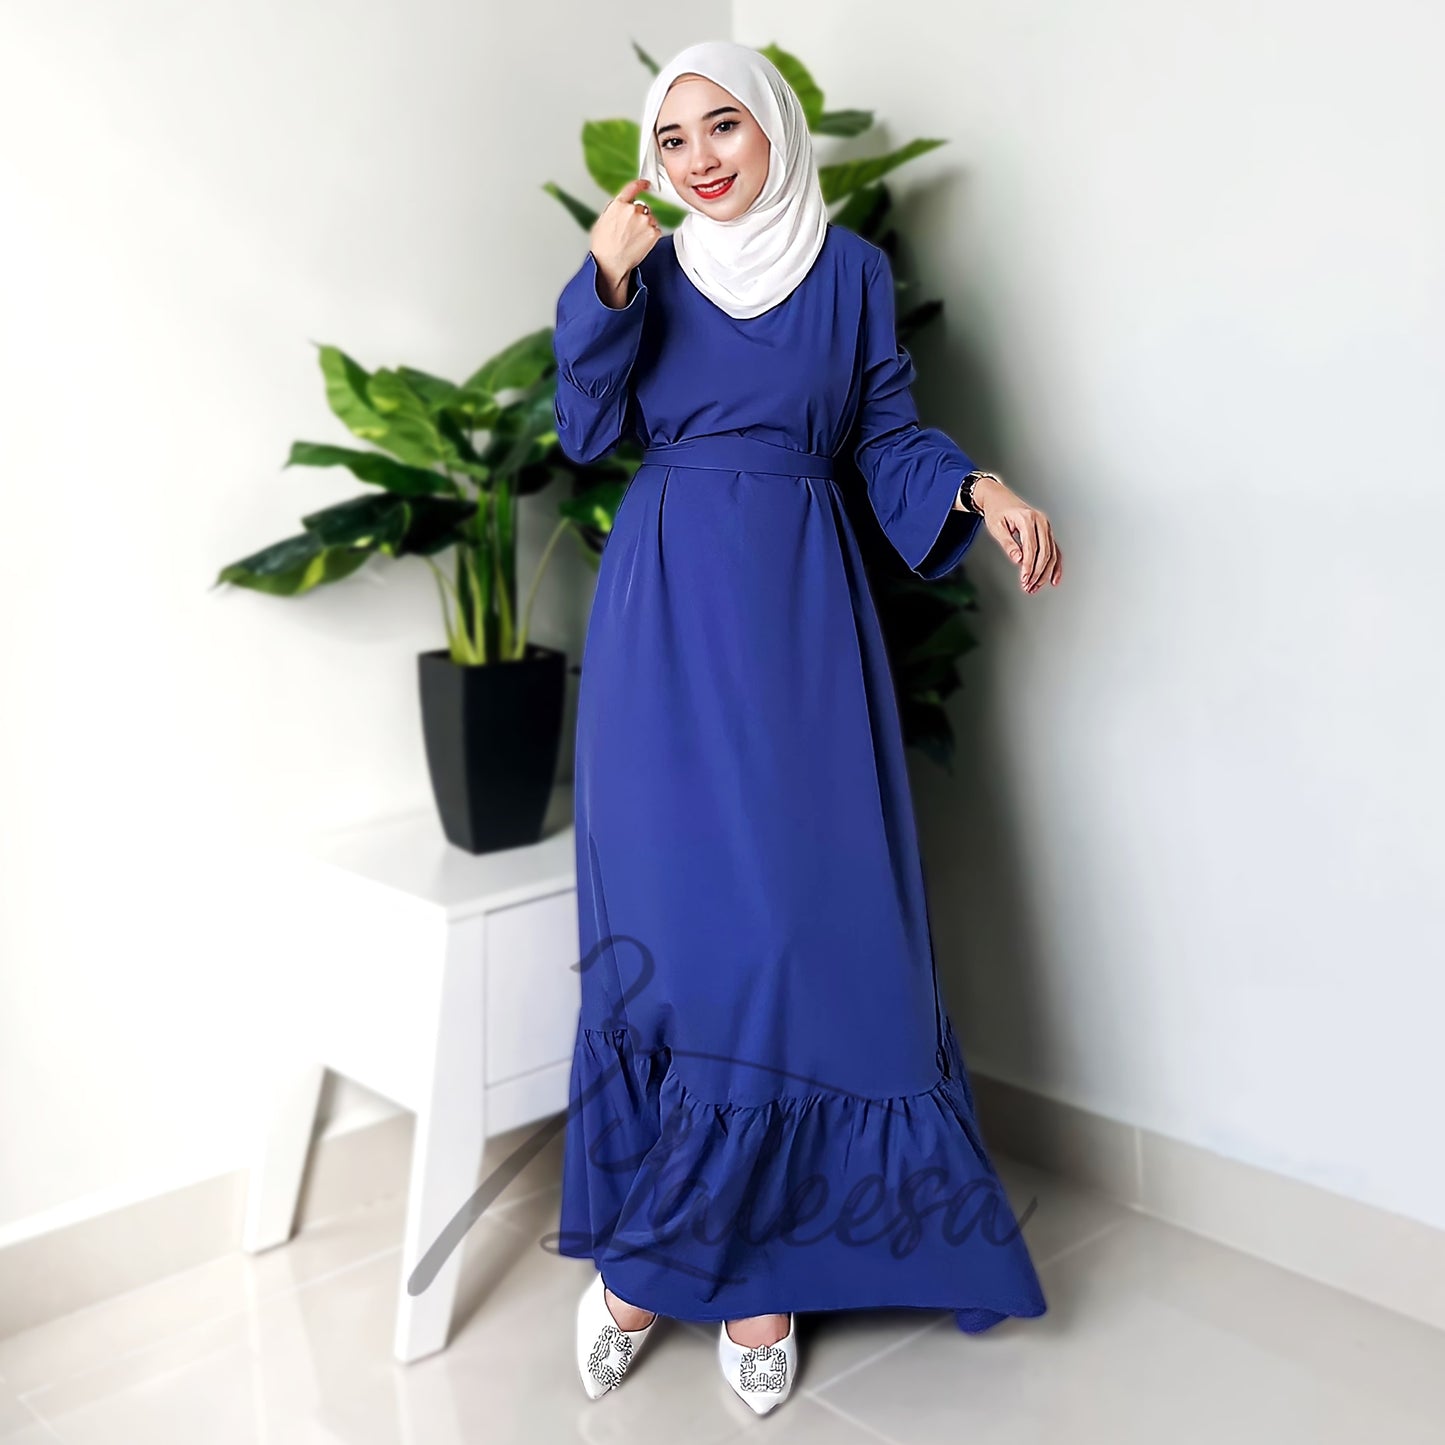 LALEESA LD251219 DRESS INAS Vintage Ruffled Hem Maxi Long Dress Muslimah Dress Women Plus Size Baju Raya 2024